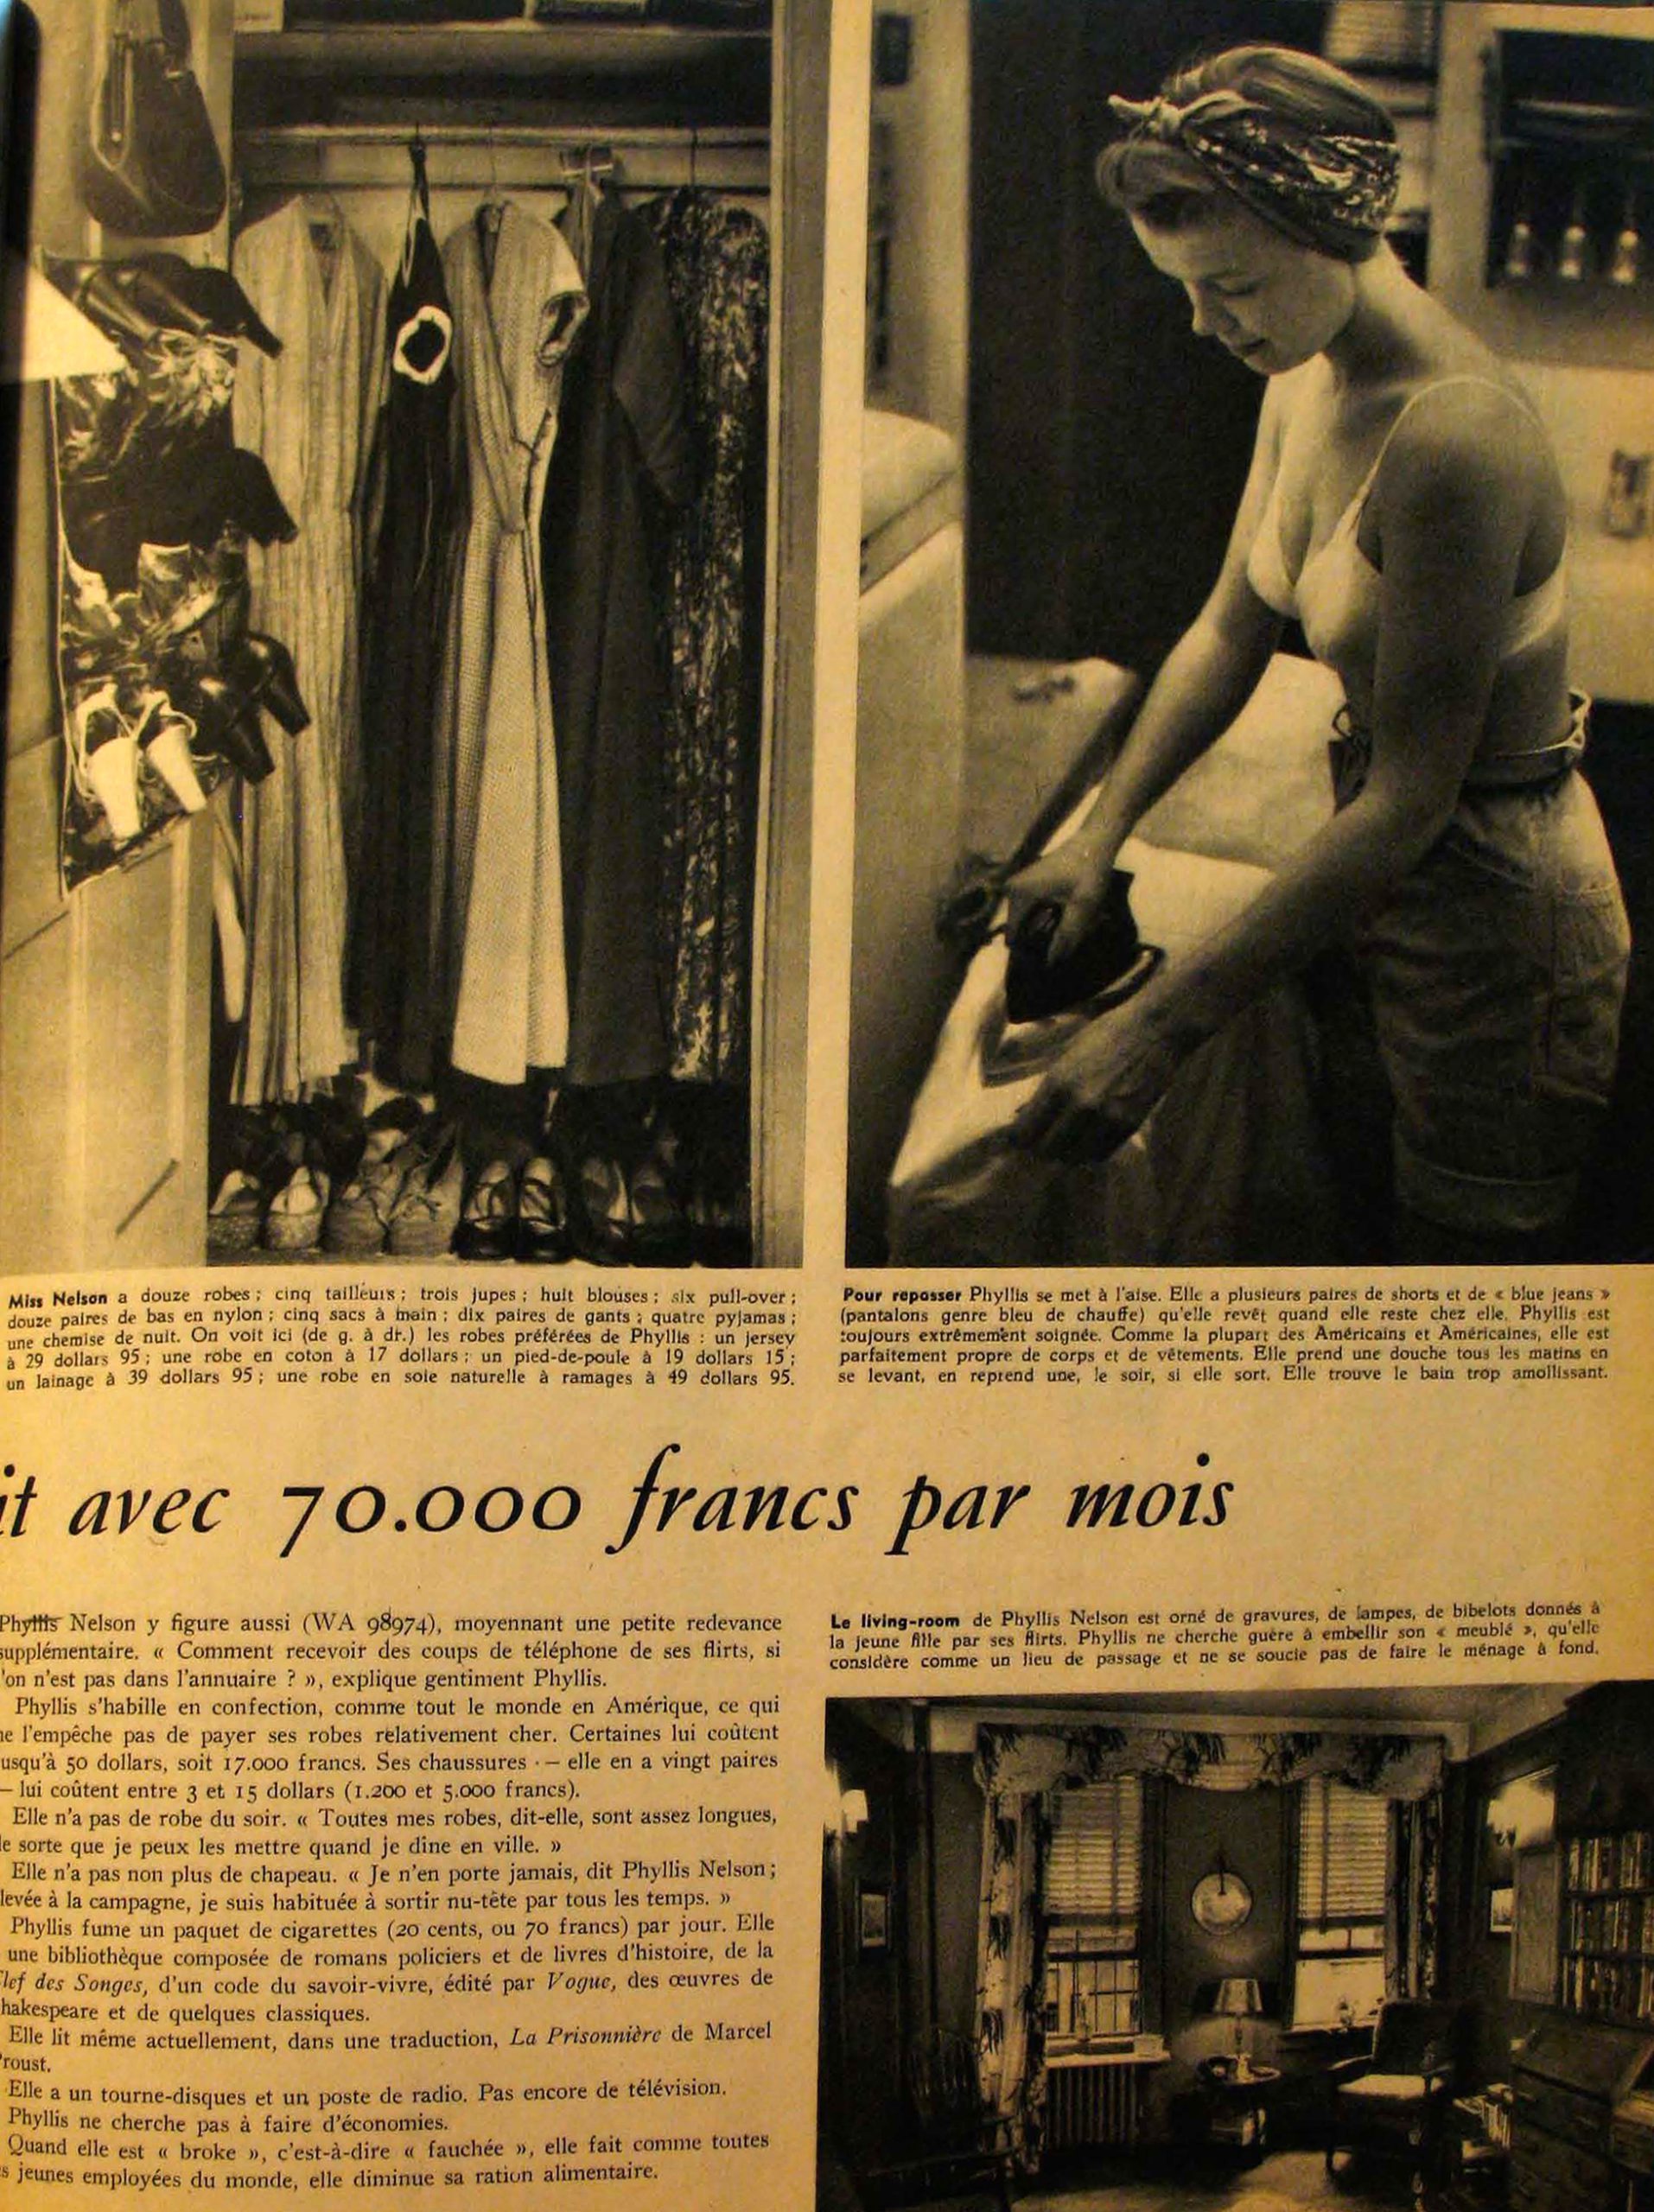 Fig. 3: Unknown author. 1949. «Phyllis Nelson est une Américaine comme les autres [2]»
Paris Match, N. 25 (September 10th 1949): 26-31
